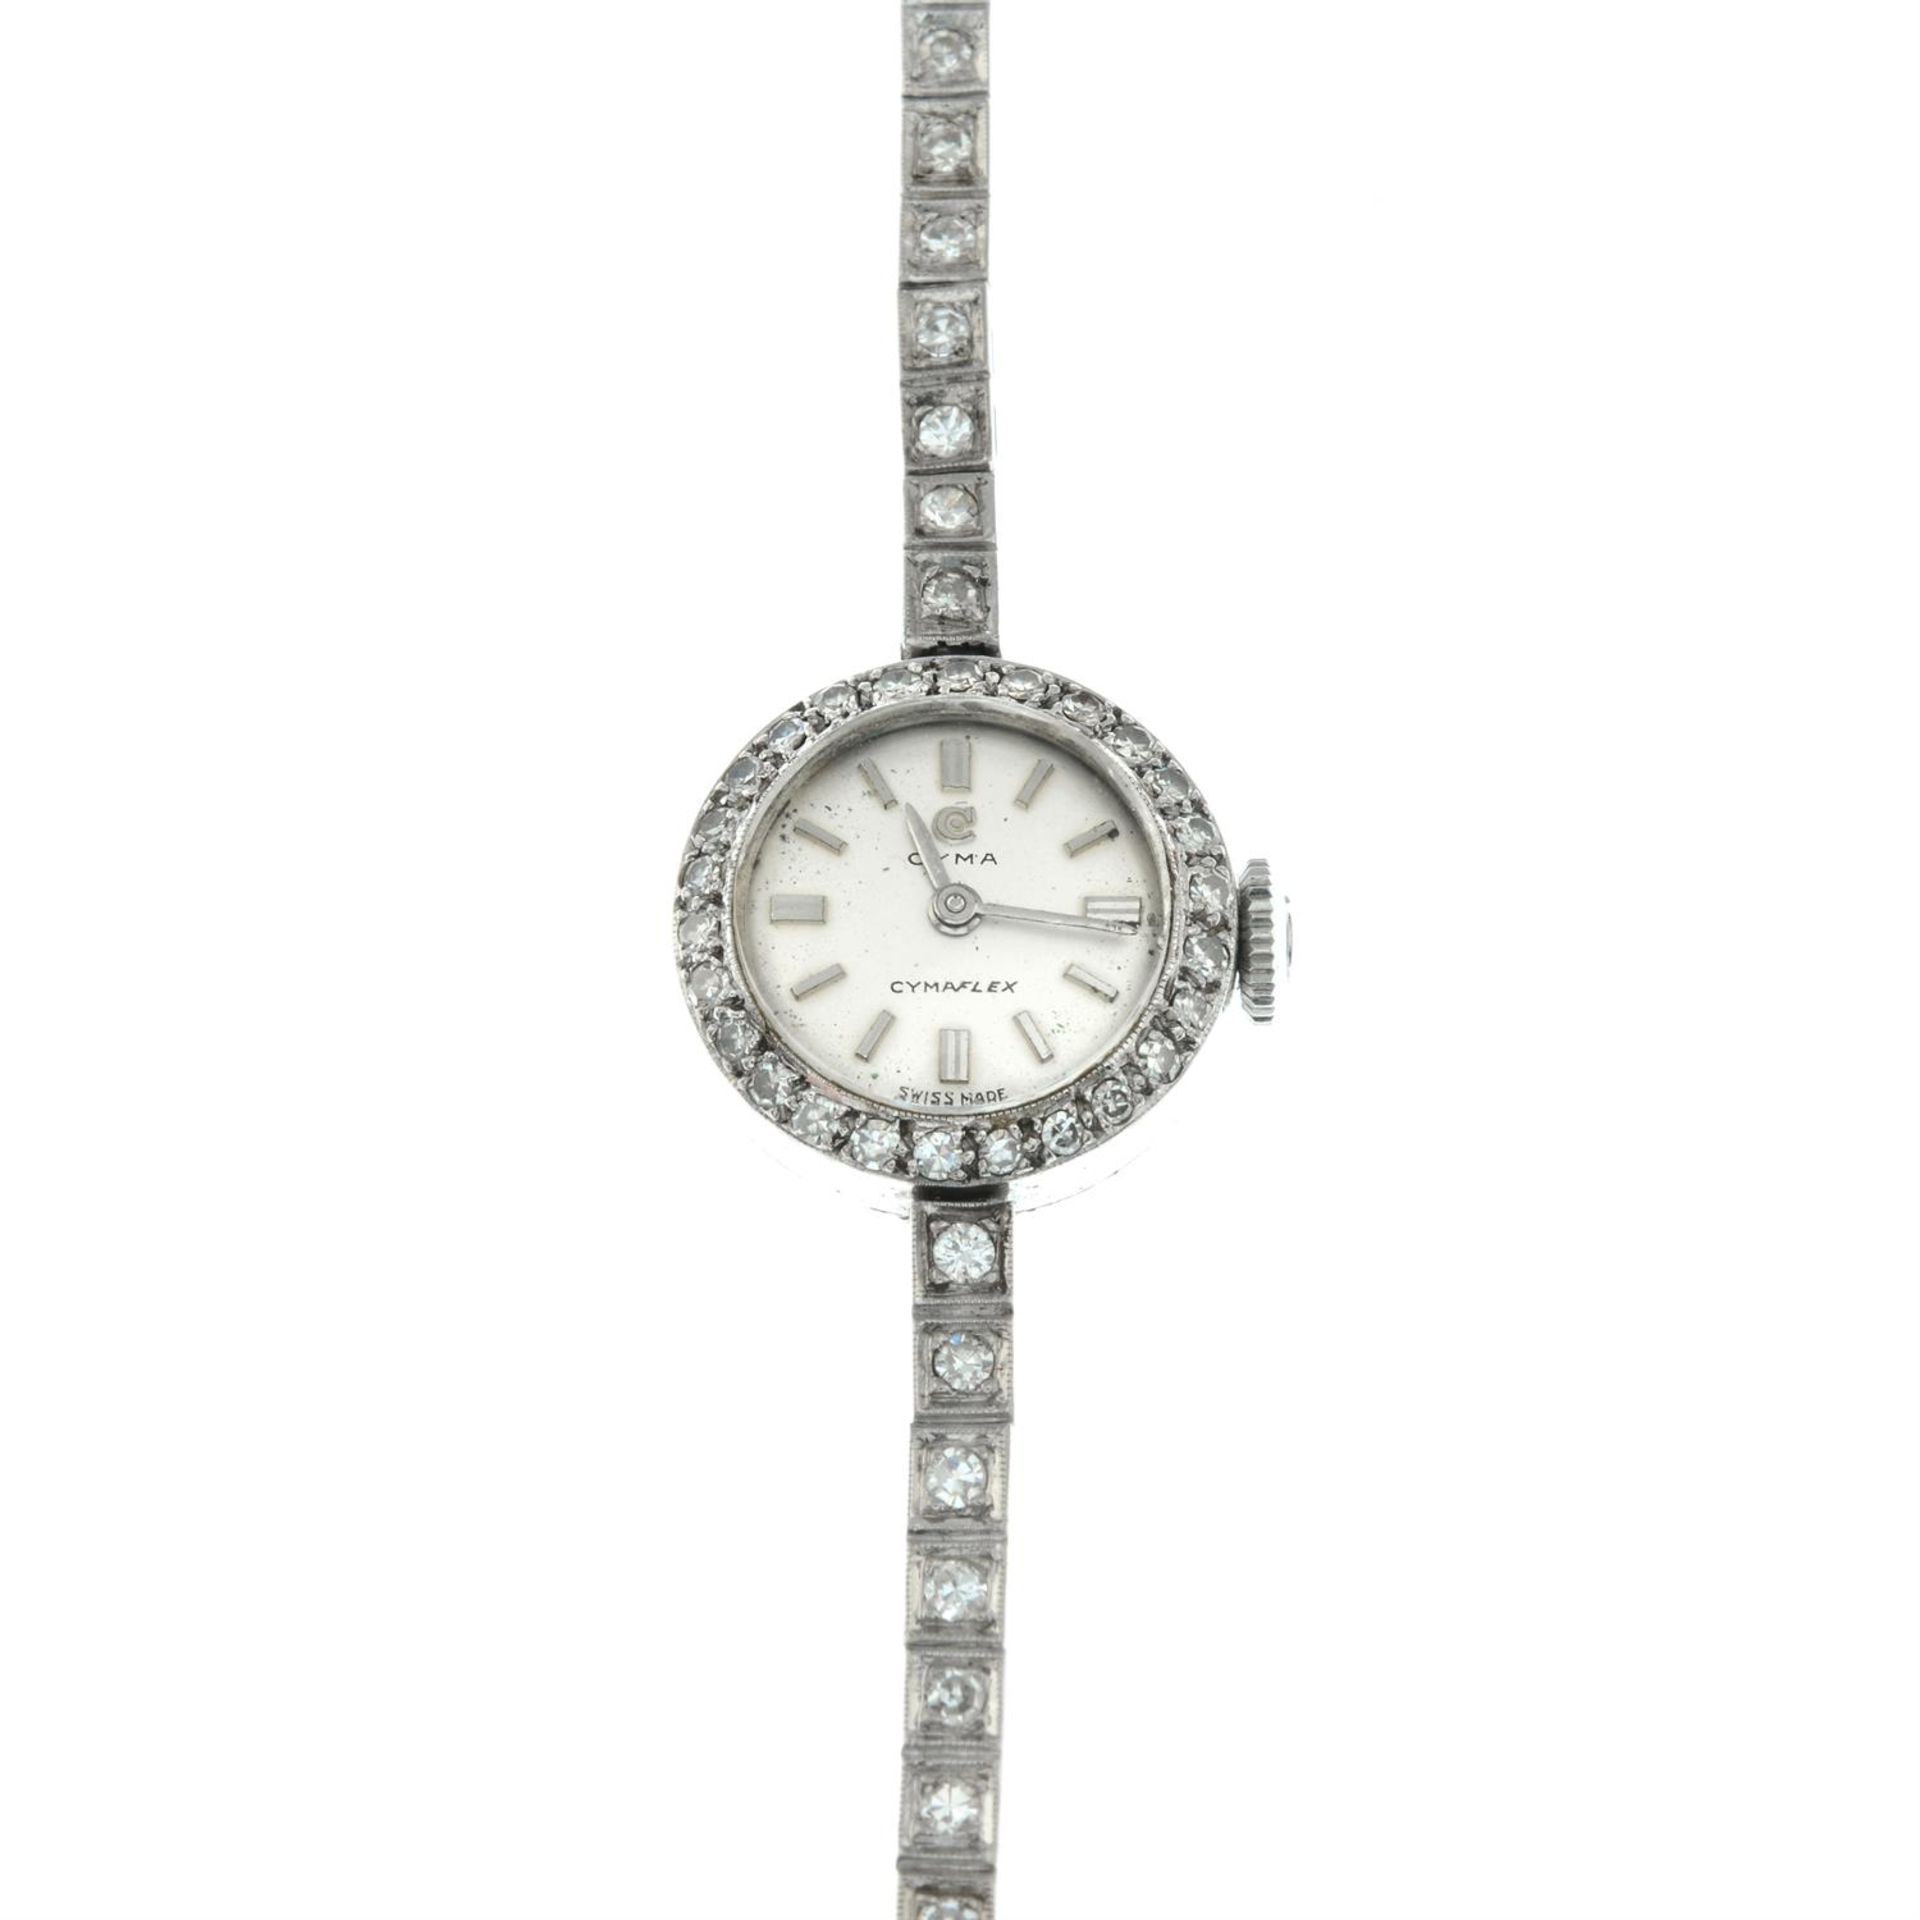 A 1950s 18ct gold single-cut diamond Cymaflex cocktail watch, by Cyma. - Image 2 of 4